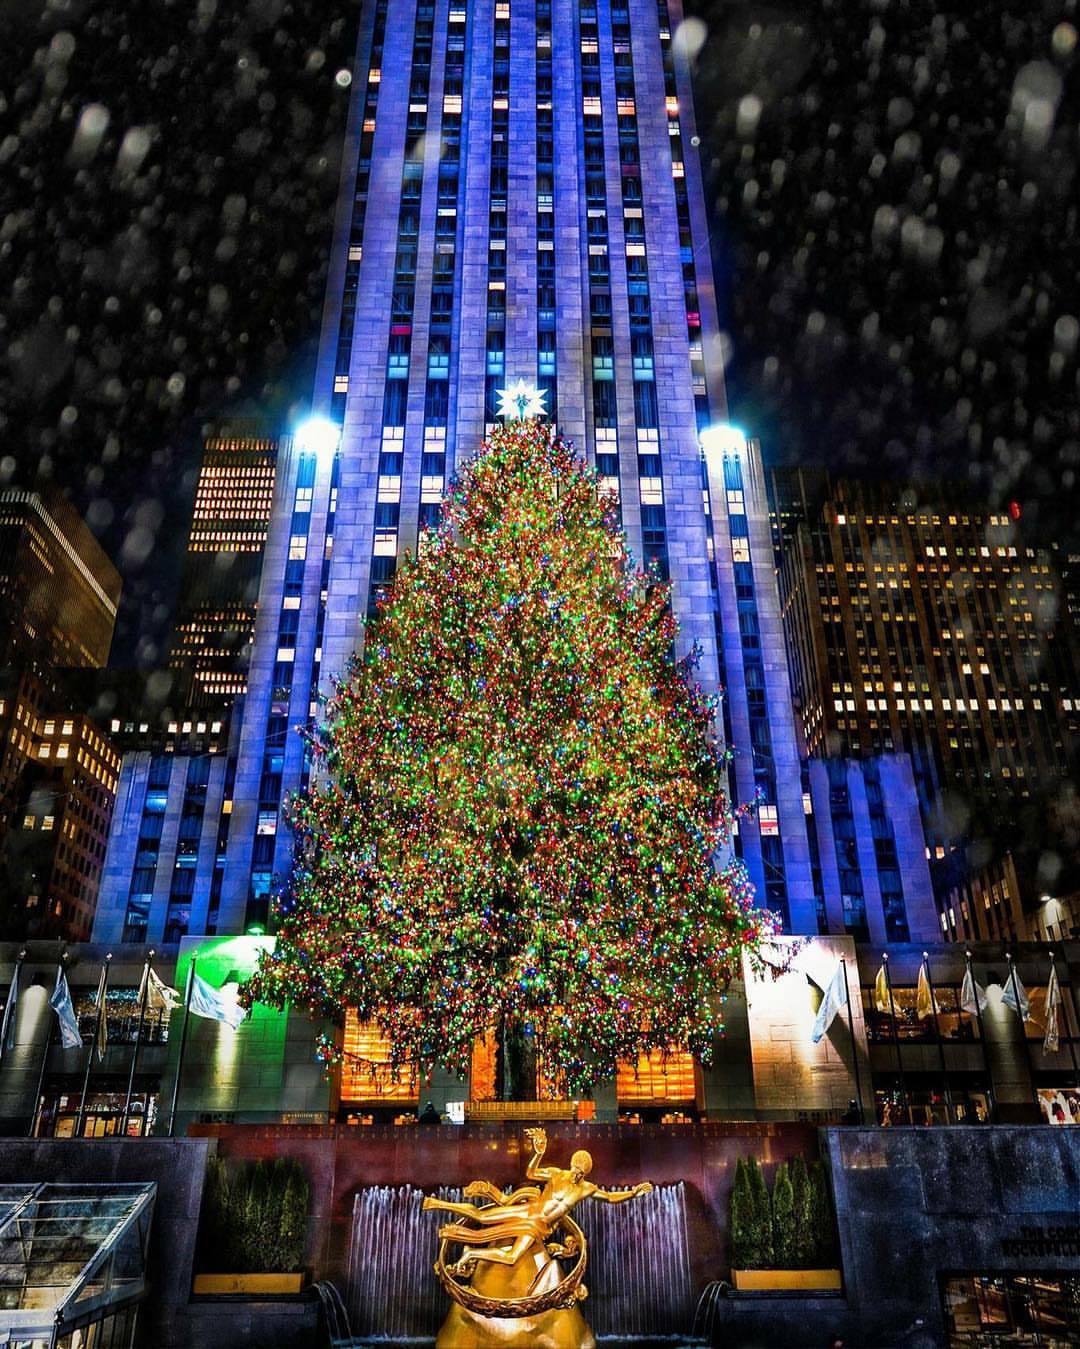 Rockefeller Center Christmas Tree by Gina Brake